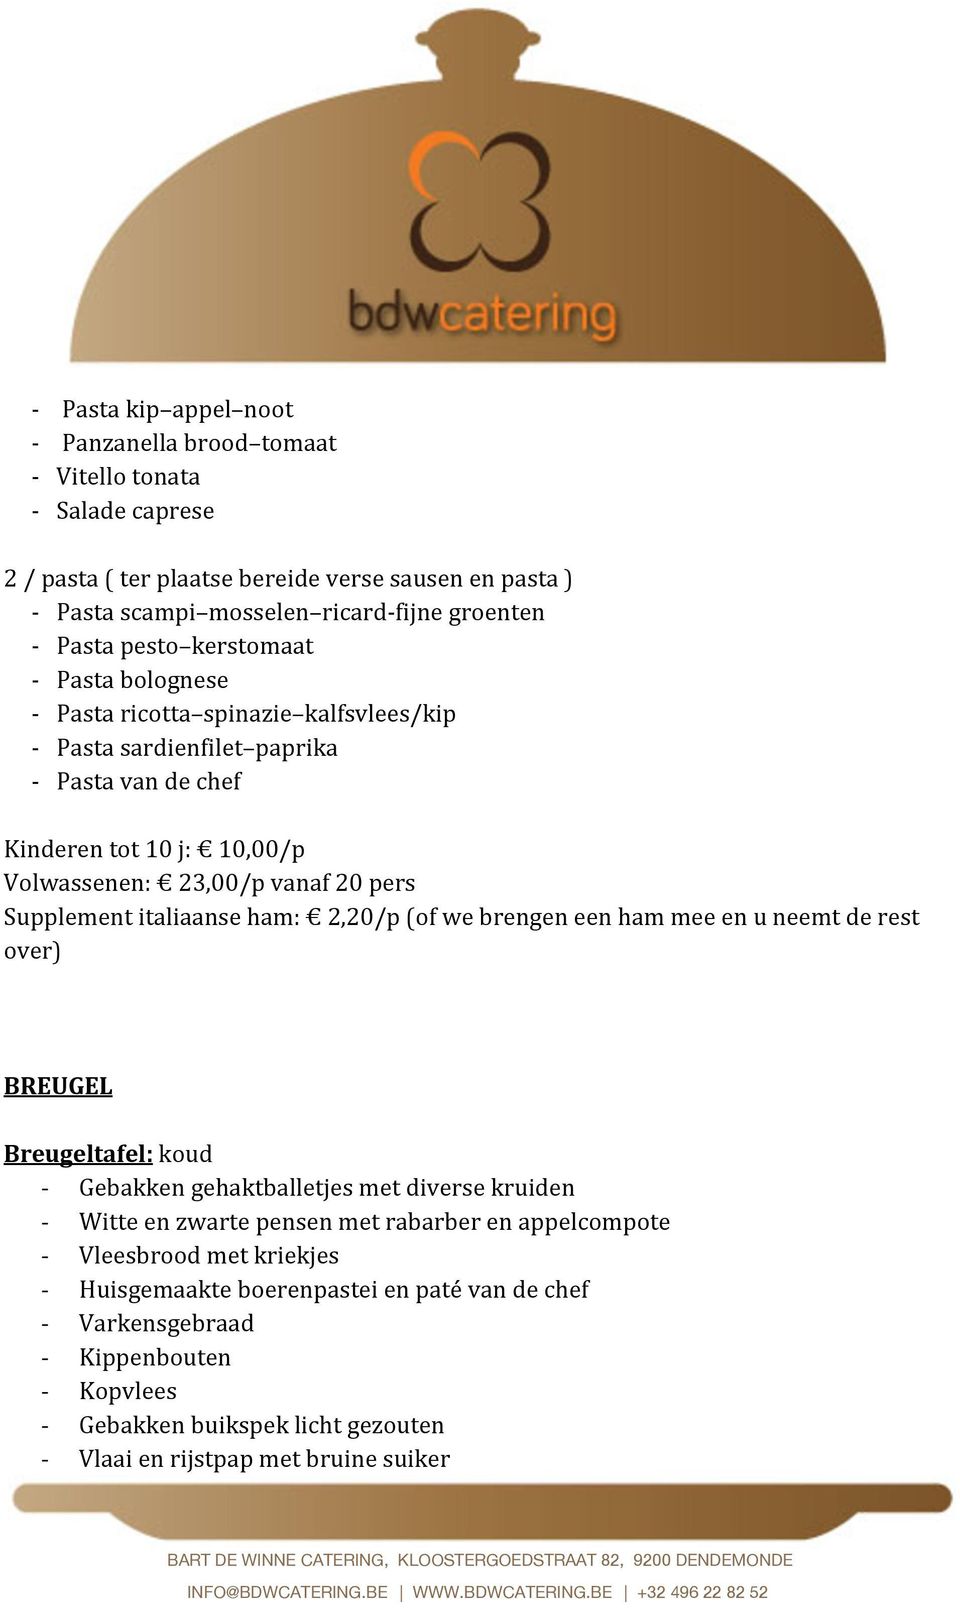 Supplement italiaanse ham: 2,20/p (of we brengen een ham mee en u neemt de rest over) BREUGEL Breugeltafel: koud - Gebakken gehaktballetjes met diverse kruiden - Witte en zwarte pensen met